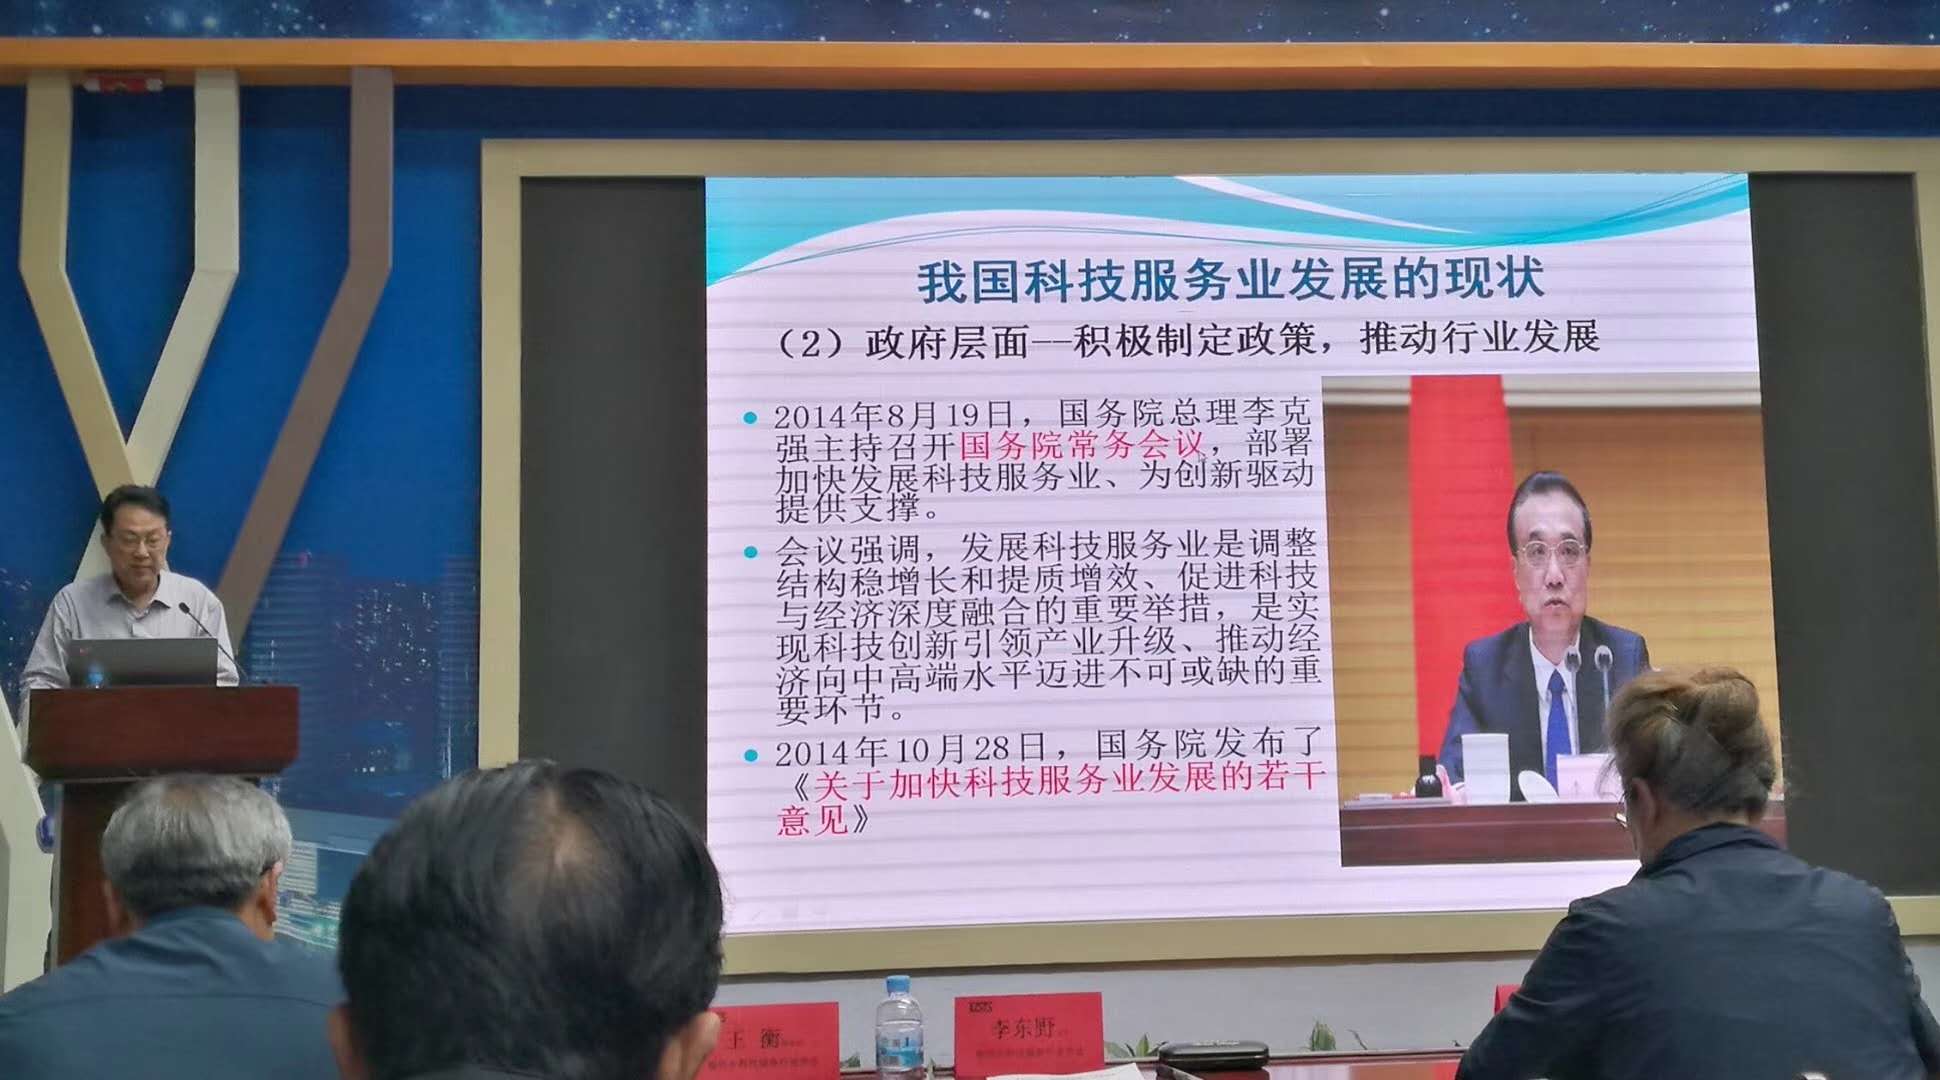 我司成功当选江苏省徐州市科技服务行业协会常务理事单位2